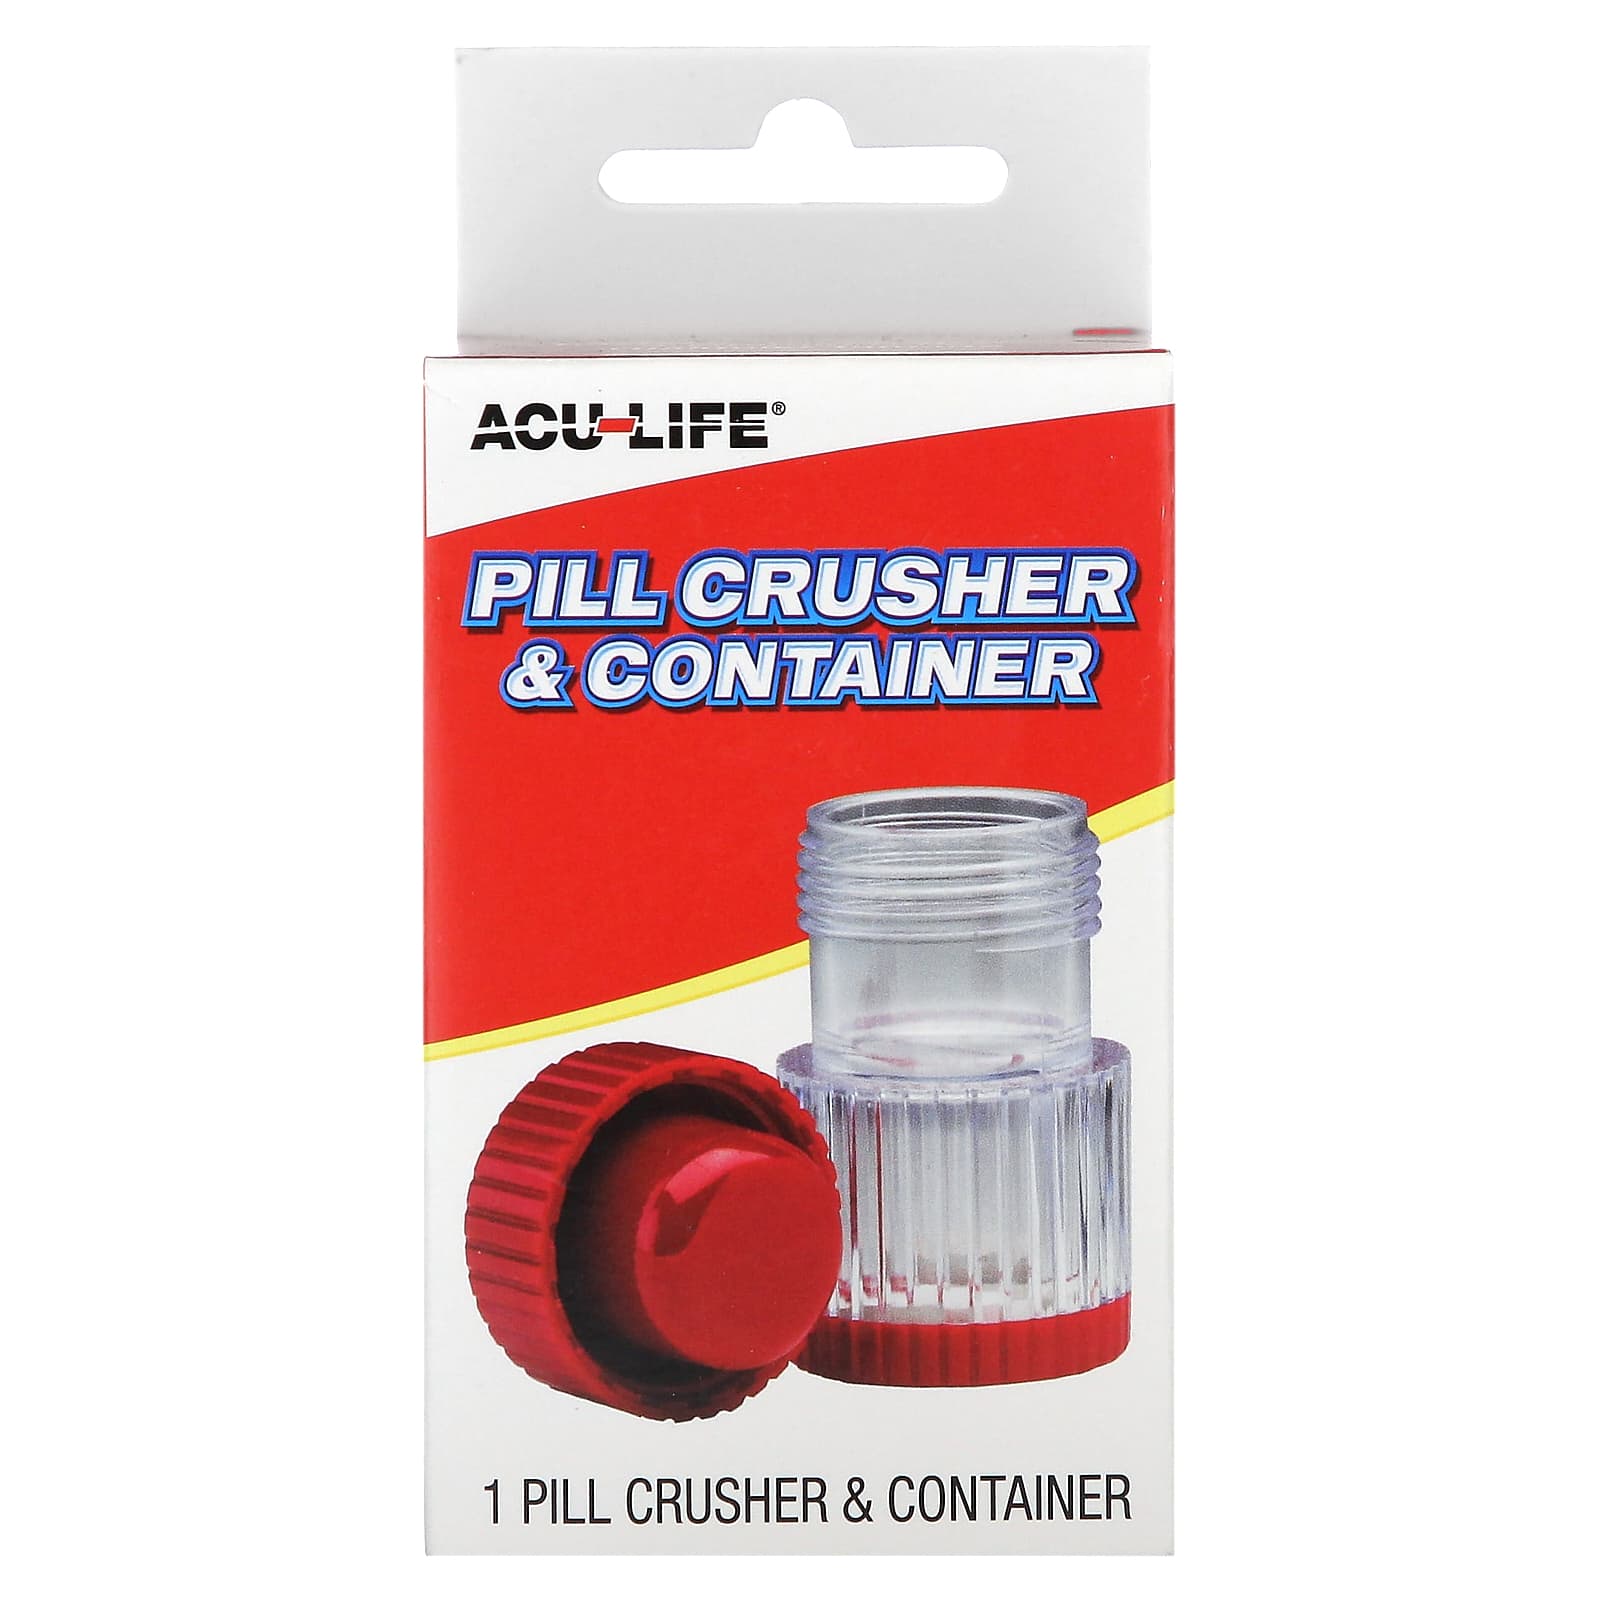 Triturador de pastillas PillCrusher profesional